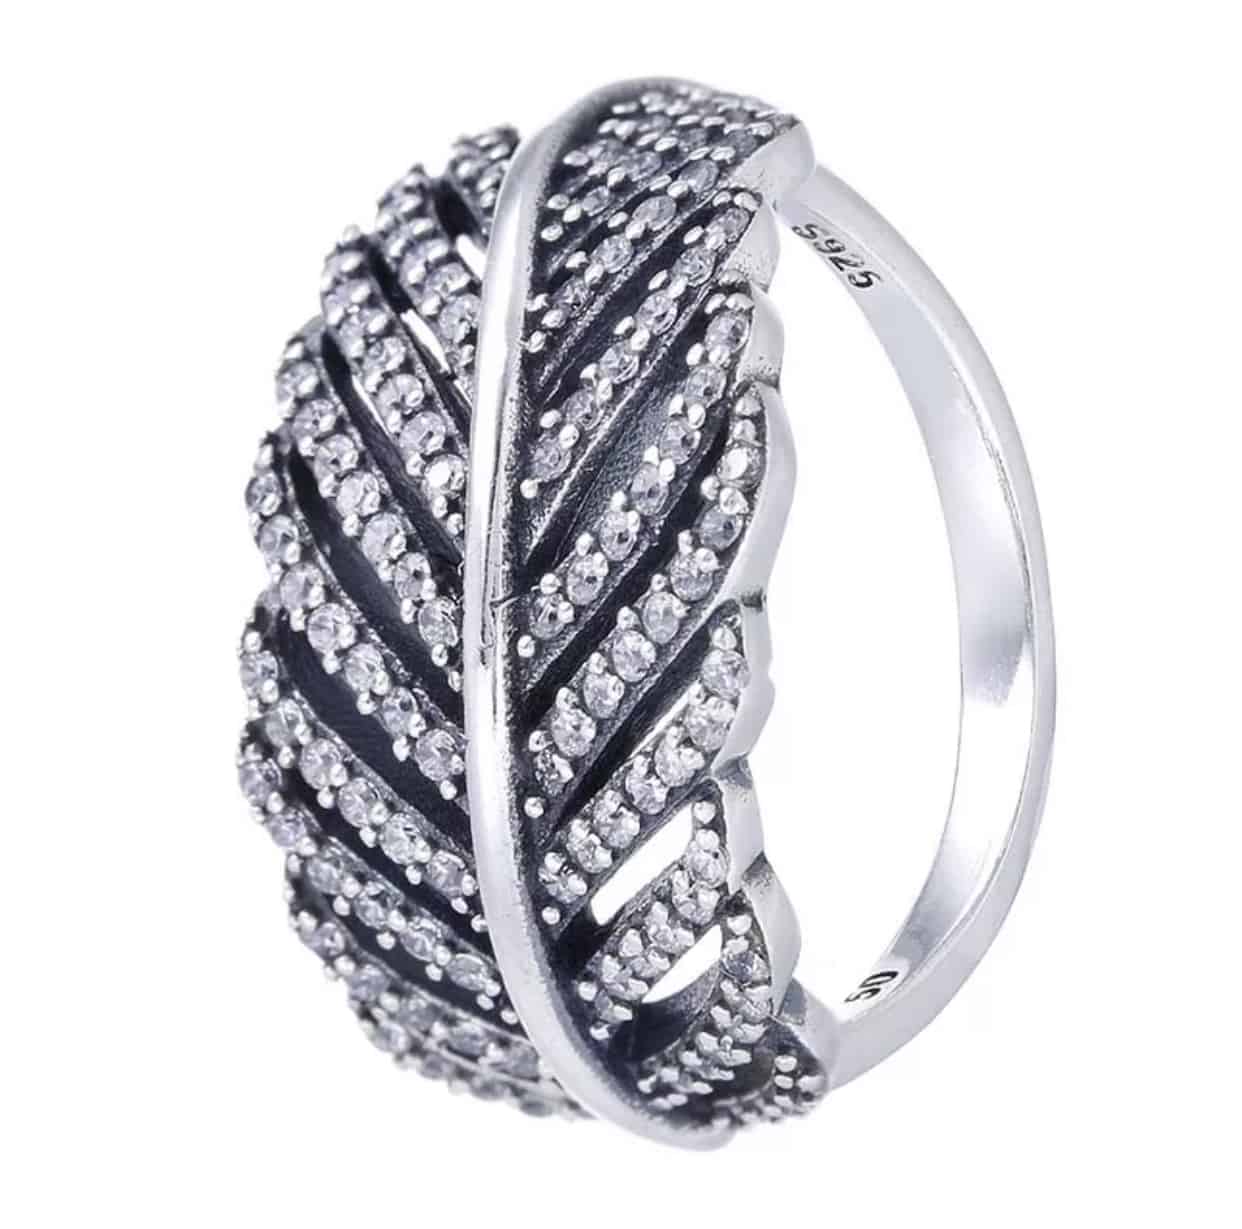 Product Afbeelding Vooraanzicht van onze prachtige ring uit de ringen collectie. Deze veer compleet ingelegd met zirkonia is gemaakt van 925 sterling zilver en verkrijgbaar in verschillende maten.